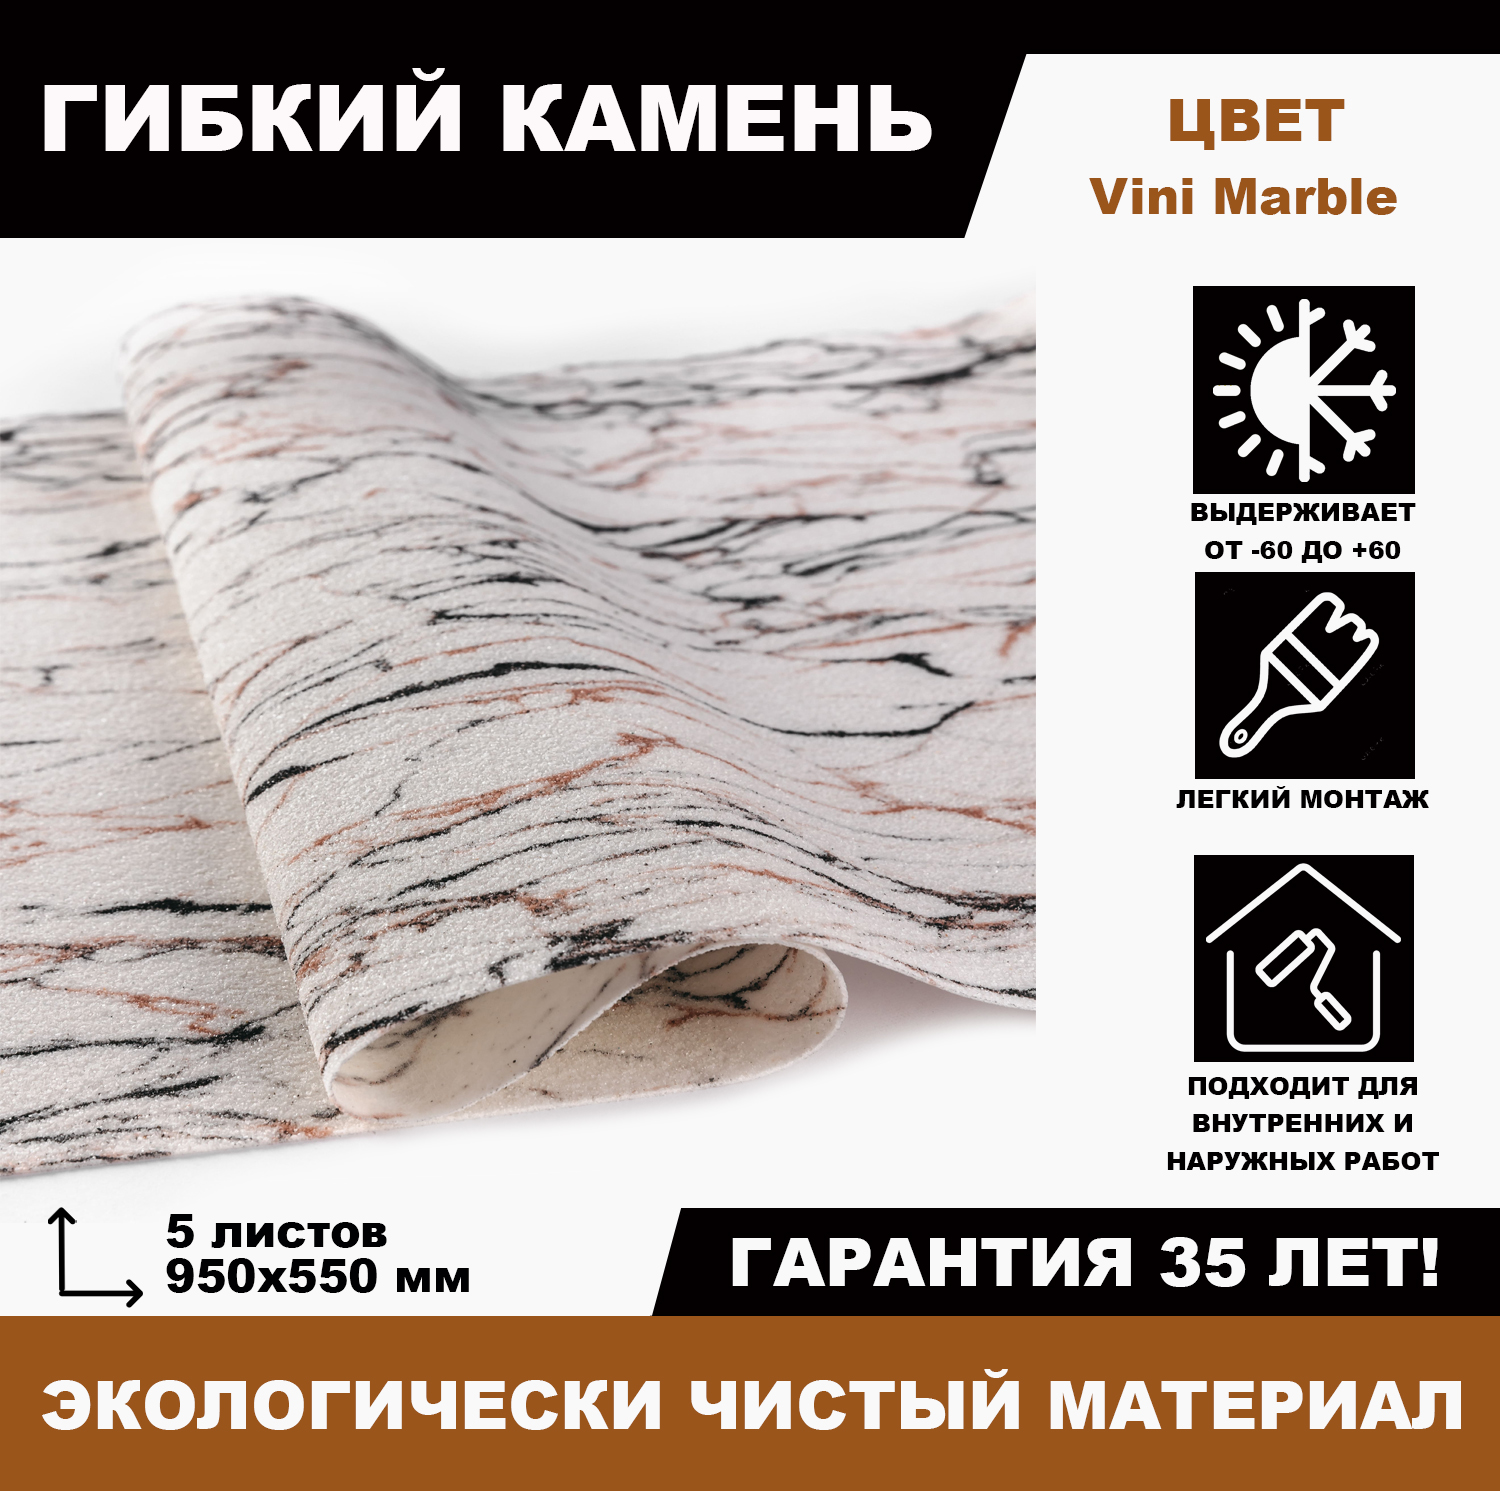 Гибкий камень Vini Marble, 5 листов гибкий скребок для удаления силикона акрила клея и старой краски milwaukee